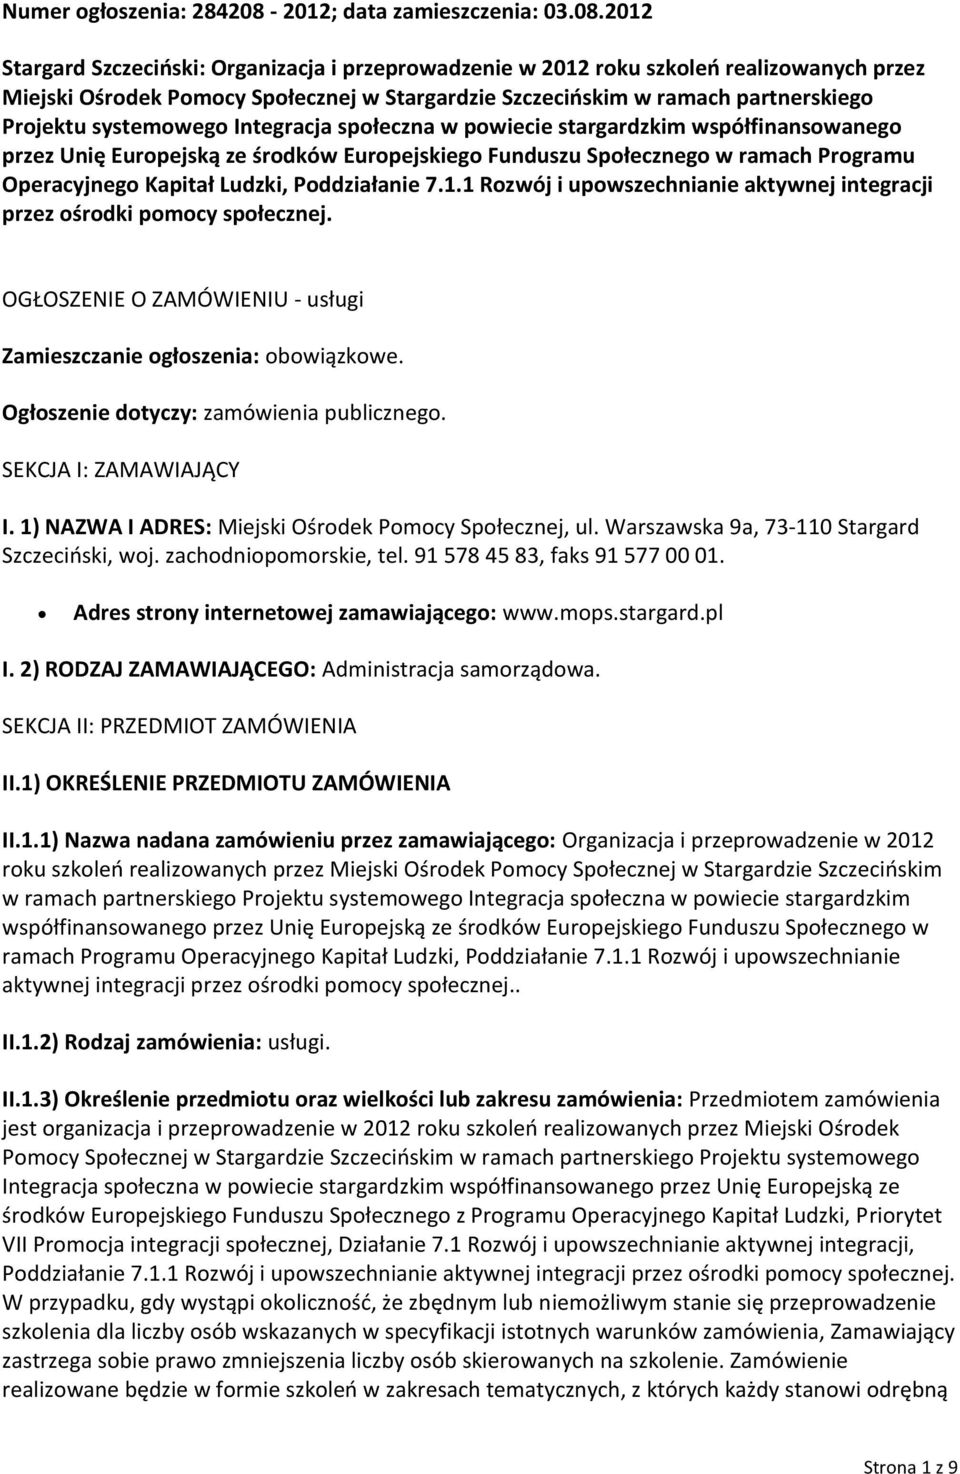 2012 Stargard Szczeciński: Organizacja i przeprowadzenie w 2012 roku szkoleń realizowanych przez Miejski Ośrodek Pomocy Społecznej w Stargardzie Szczecińskim w ramach partnerskiego Projektu